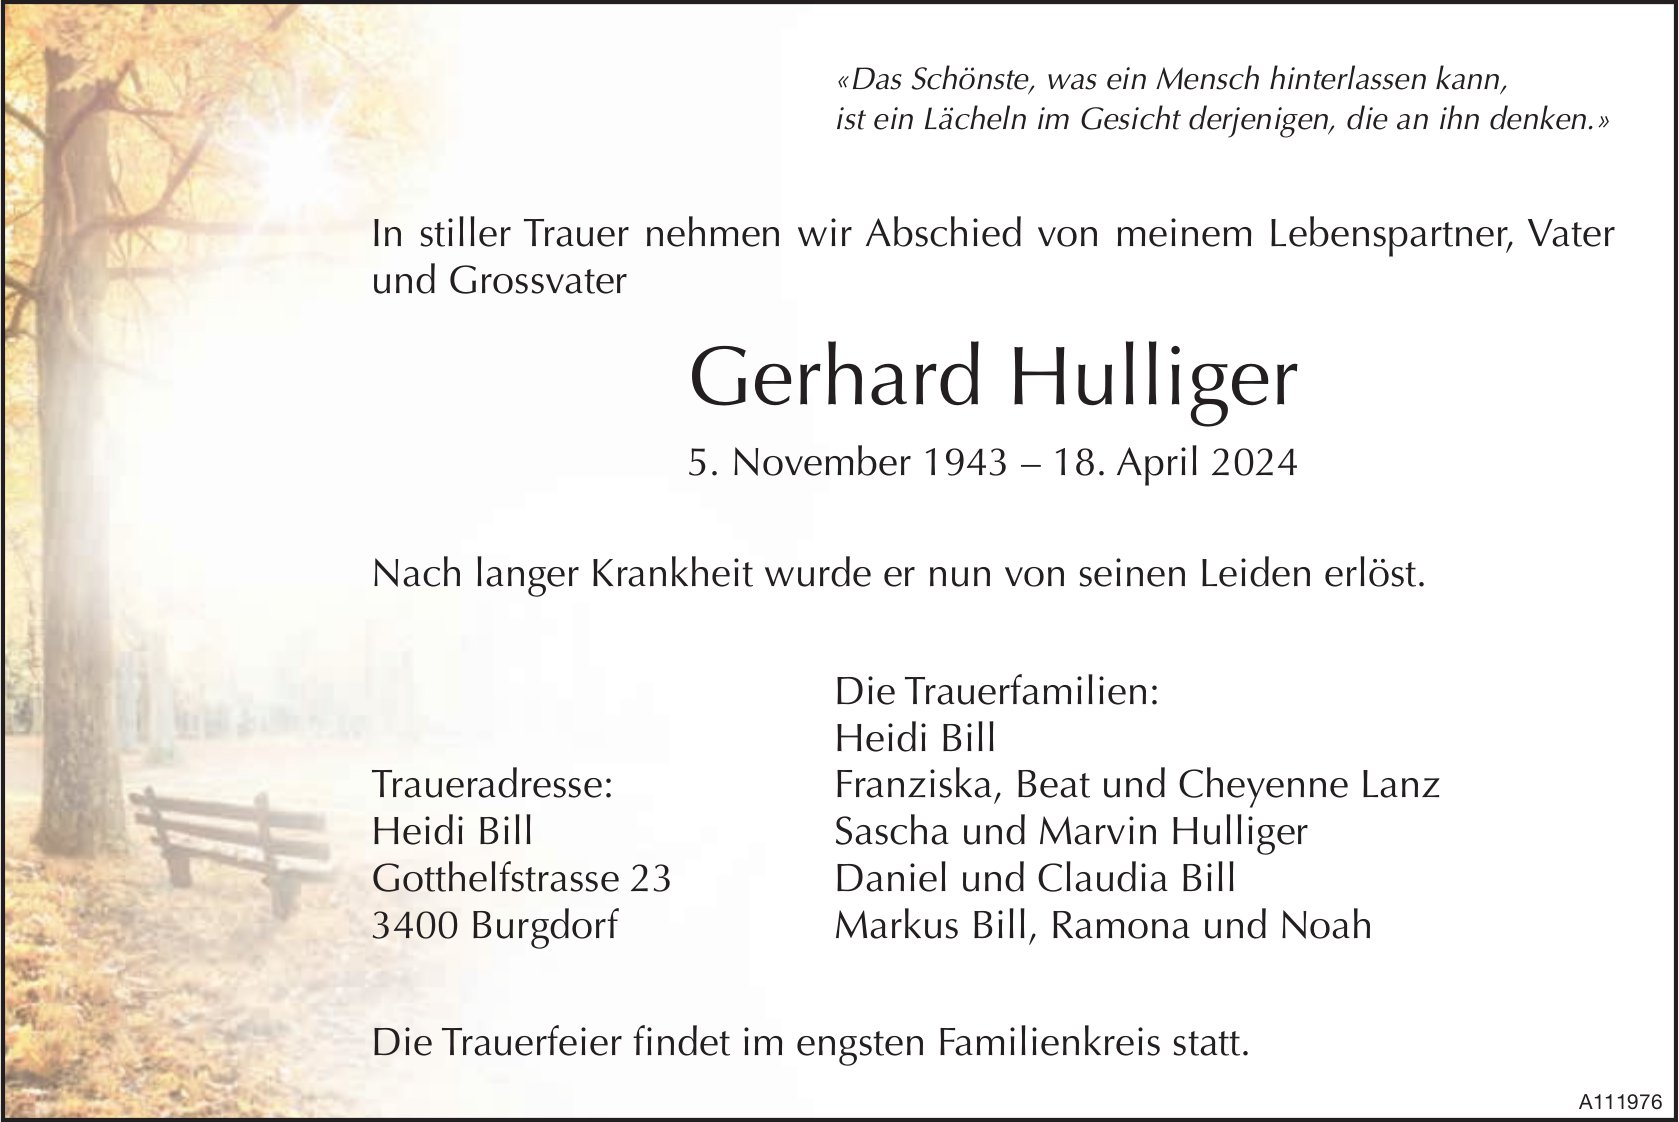 Gerhard Hulliger, April 2024 / TA